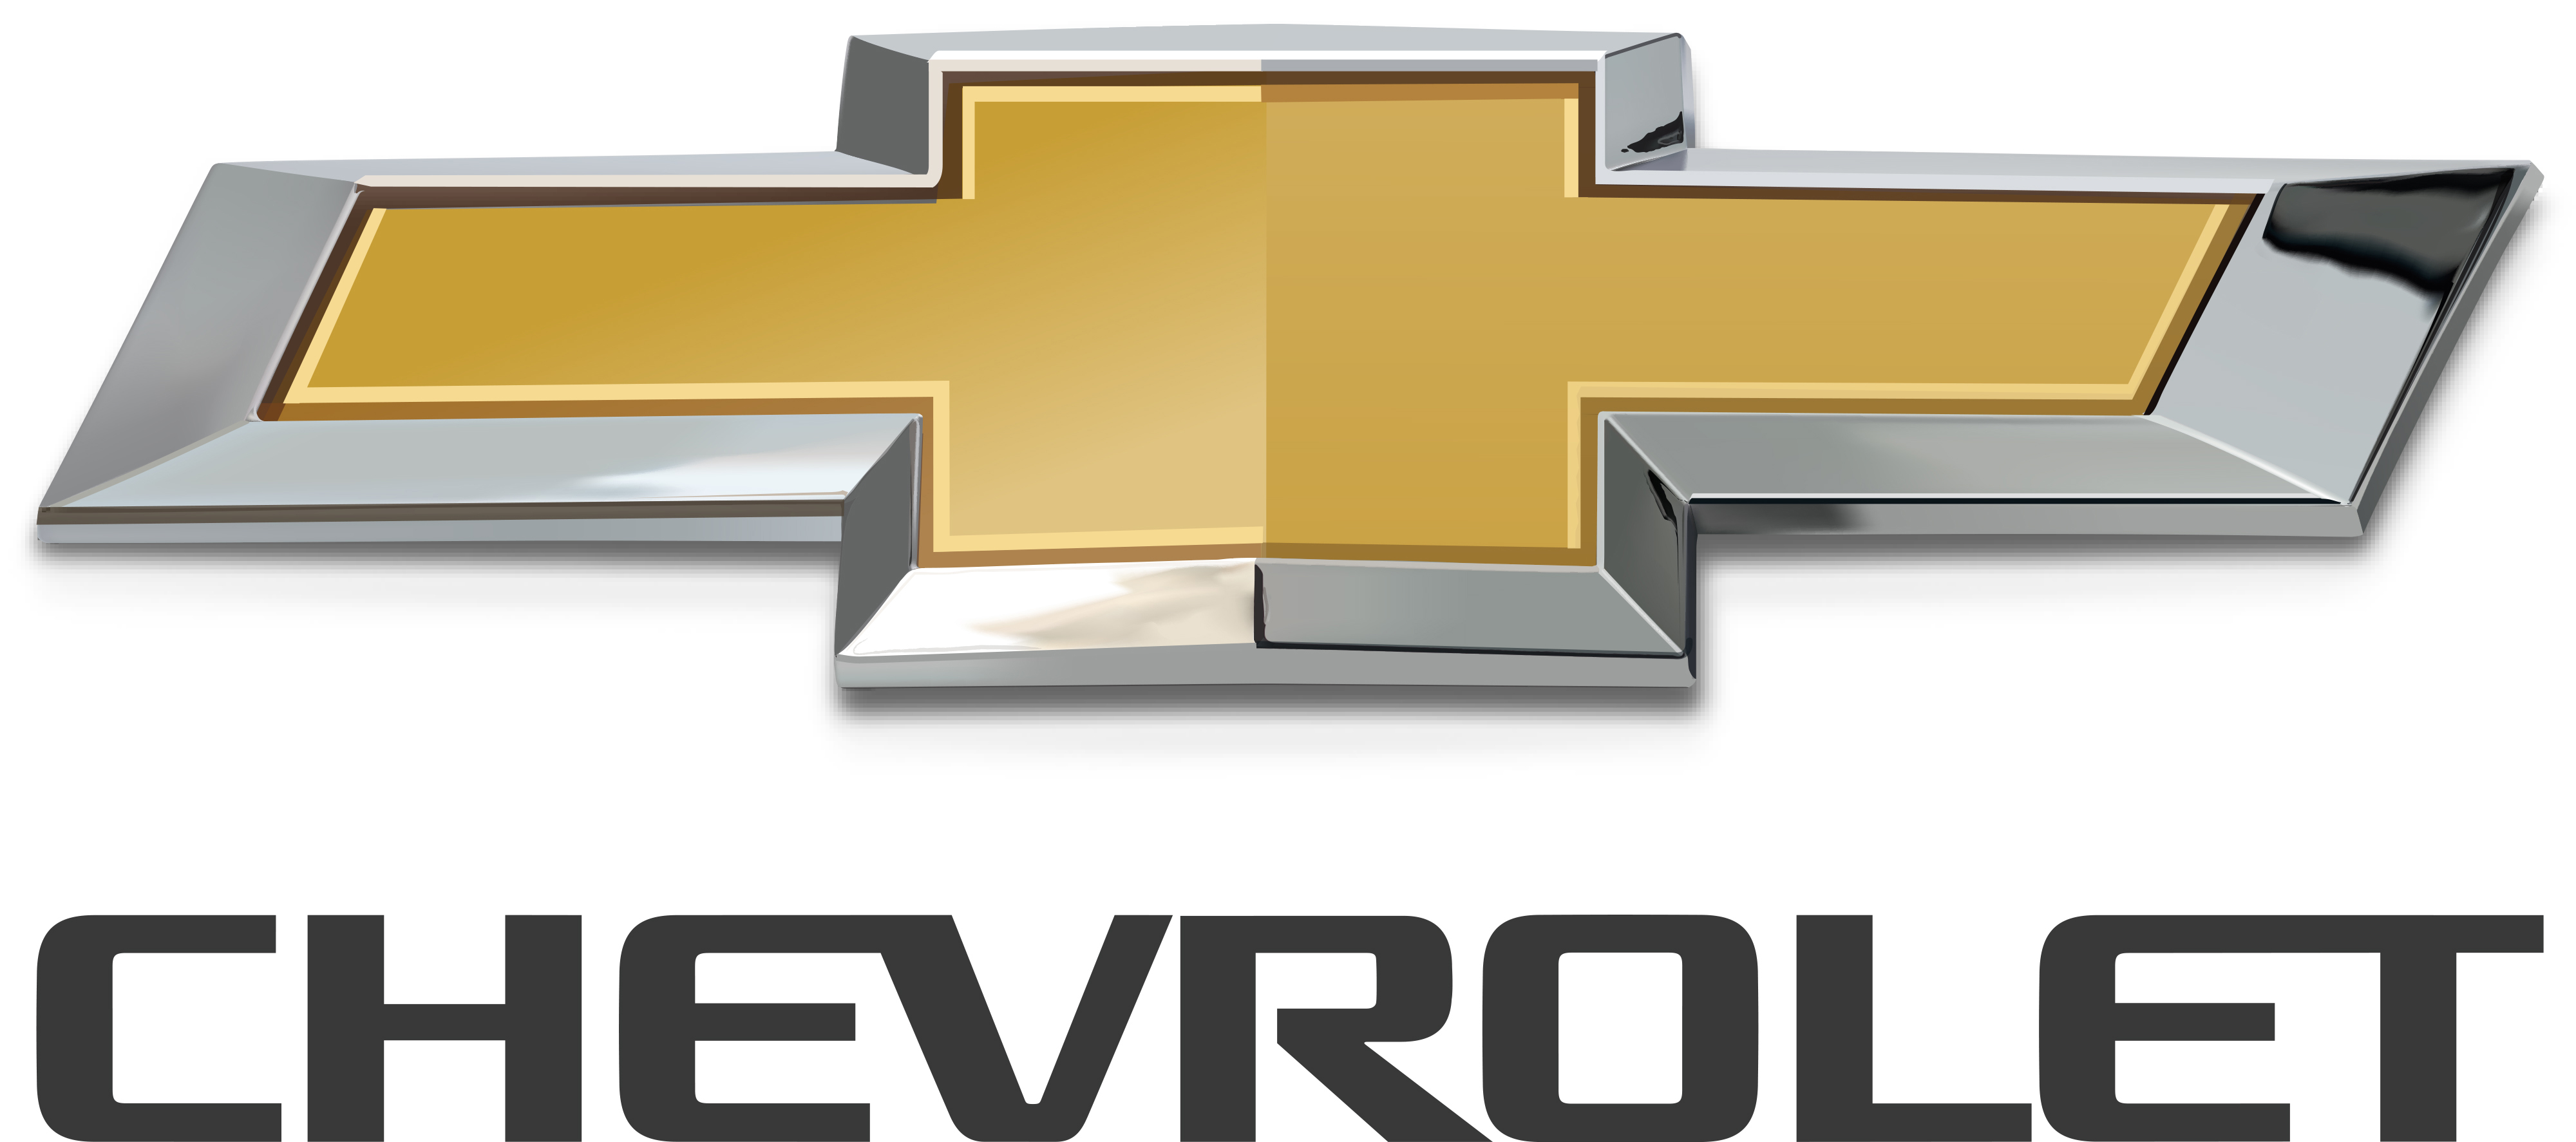 Chevrolet Logo Image - KibrisPDR